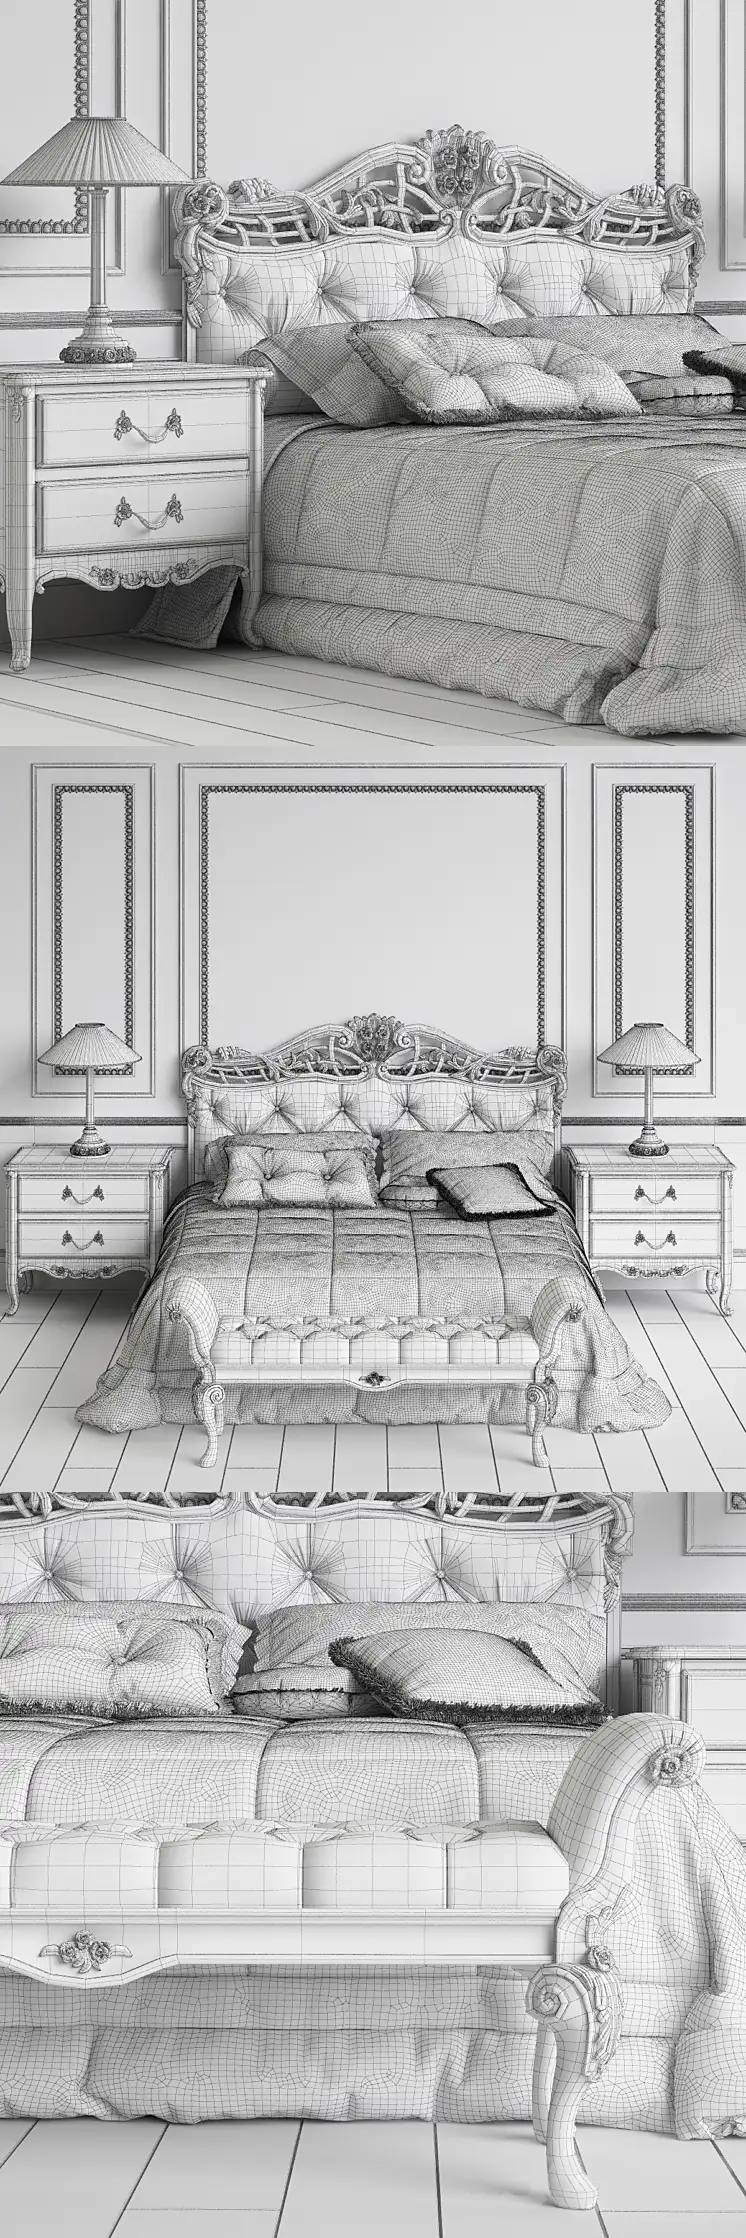 دانلود مدل سه بعدی تخت خواب کلاسیک 56 - 6